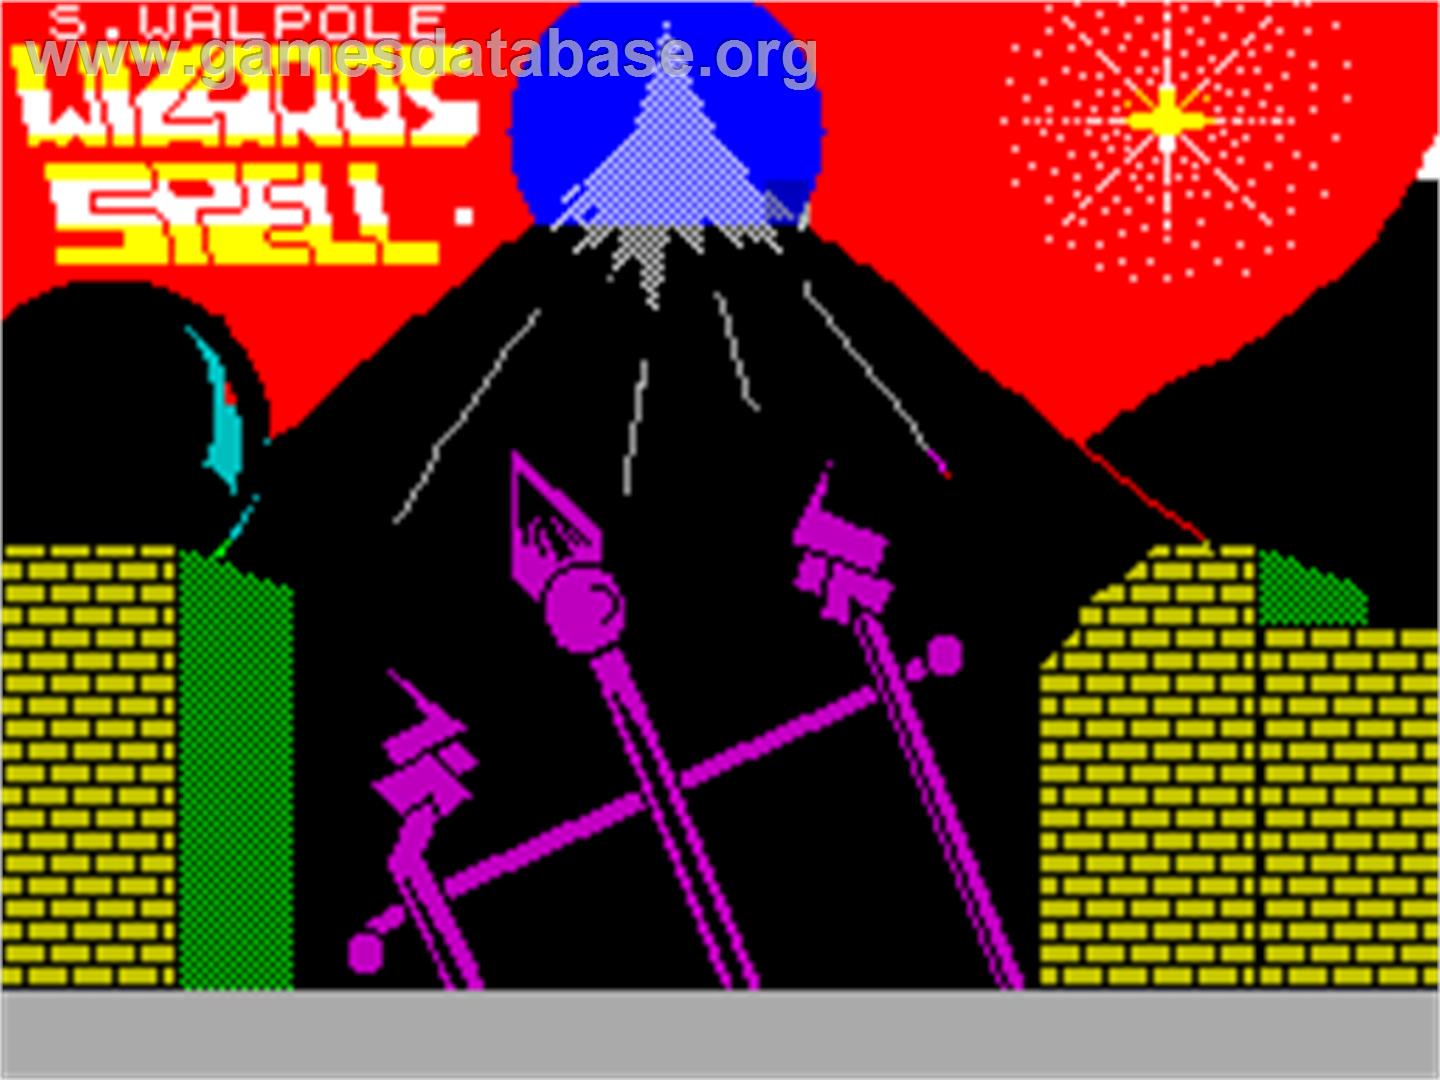 Wizards Spell - Sinclair ZX Spectrum - Artwork - Title Screen